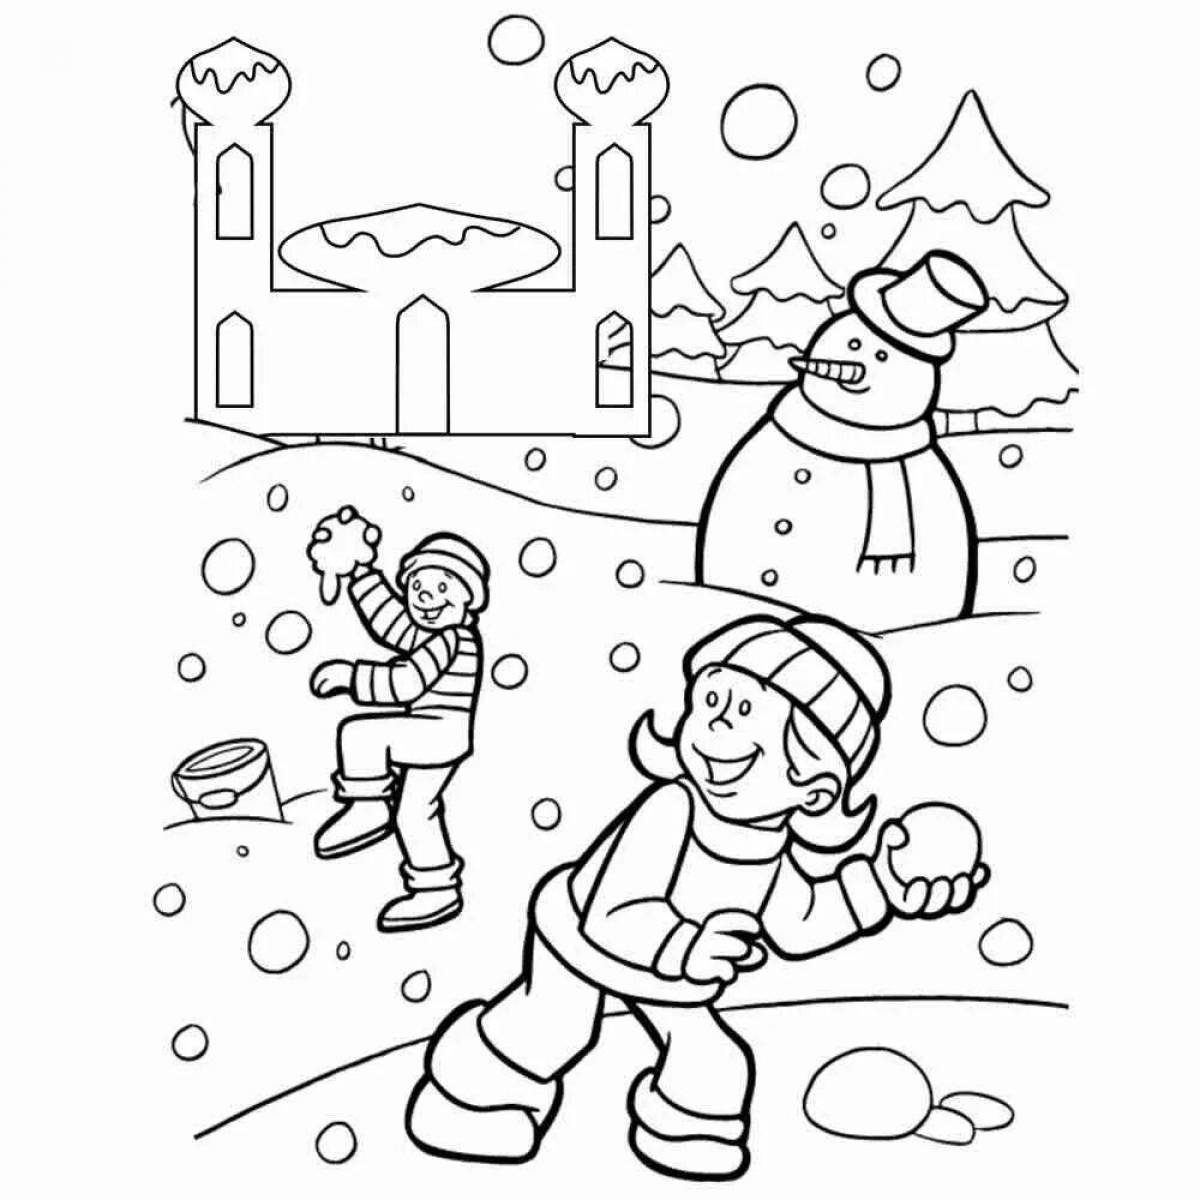 Fun coloring book for winter fun